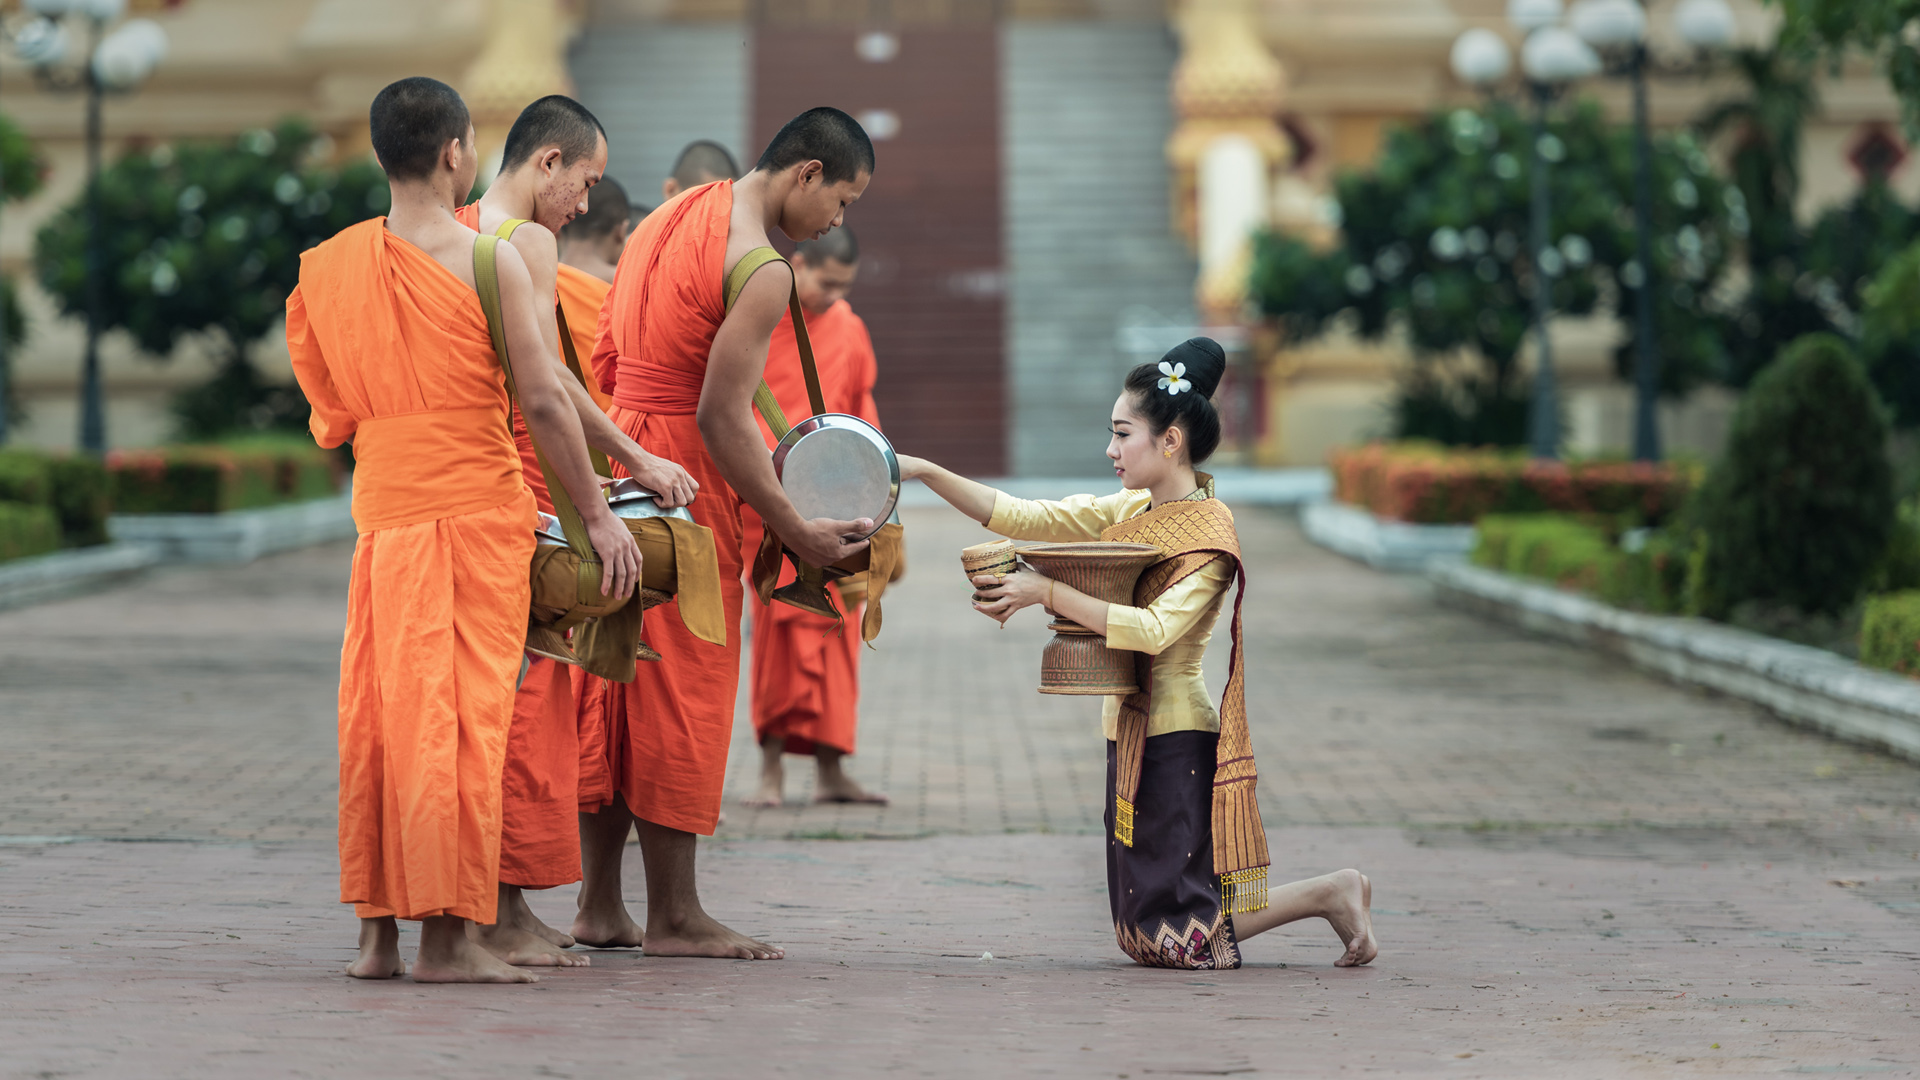 曼谷 佛教 和尚 女孩祈祷桌面高清壁纸